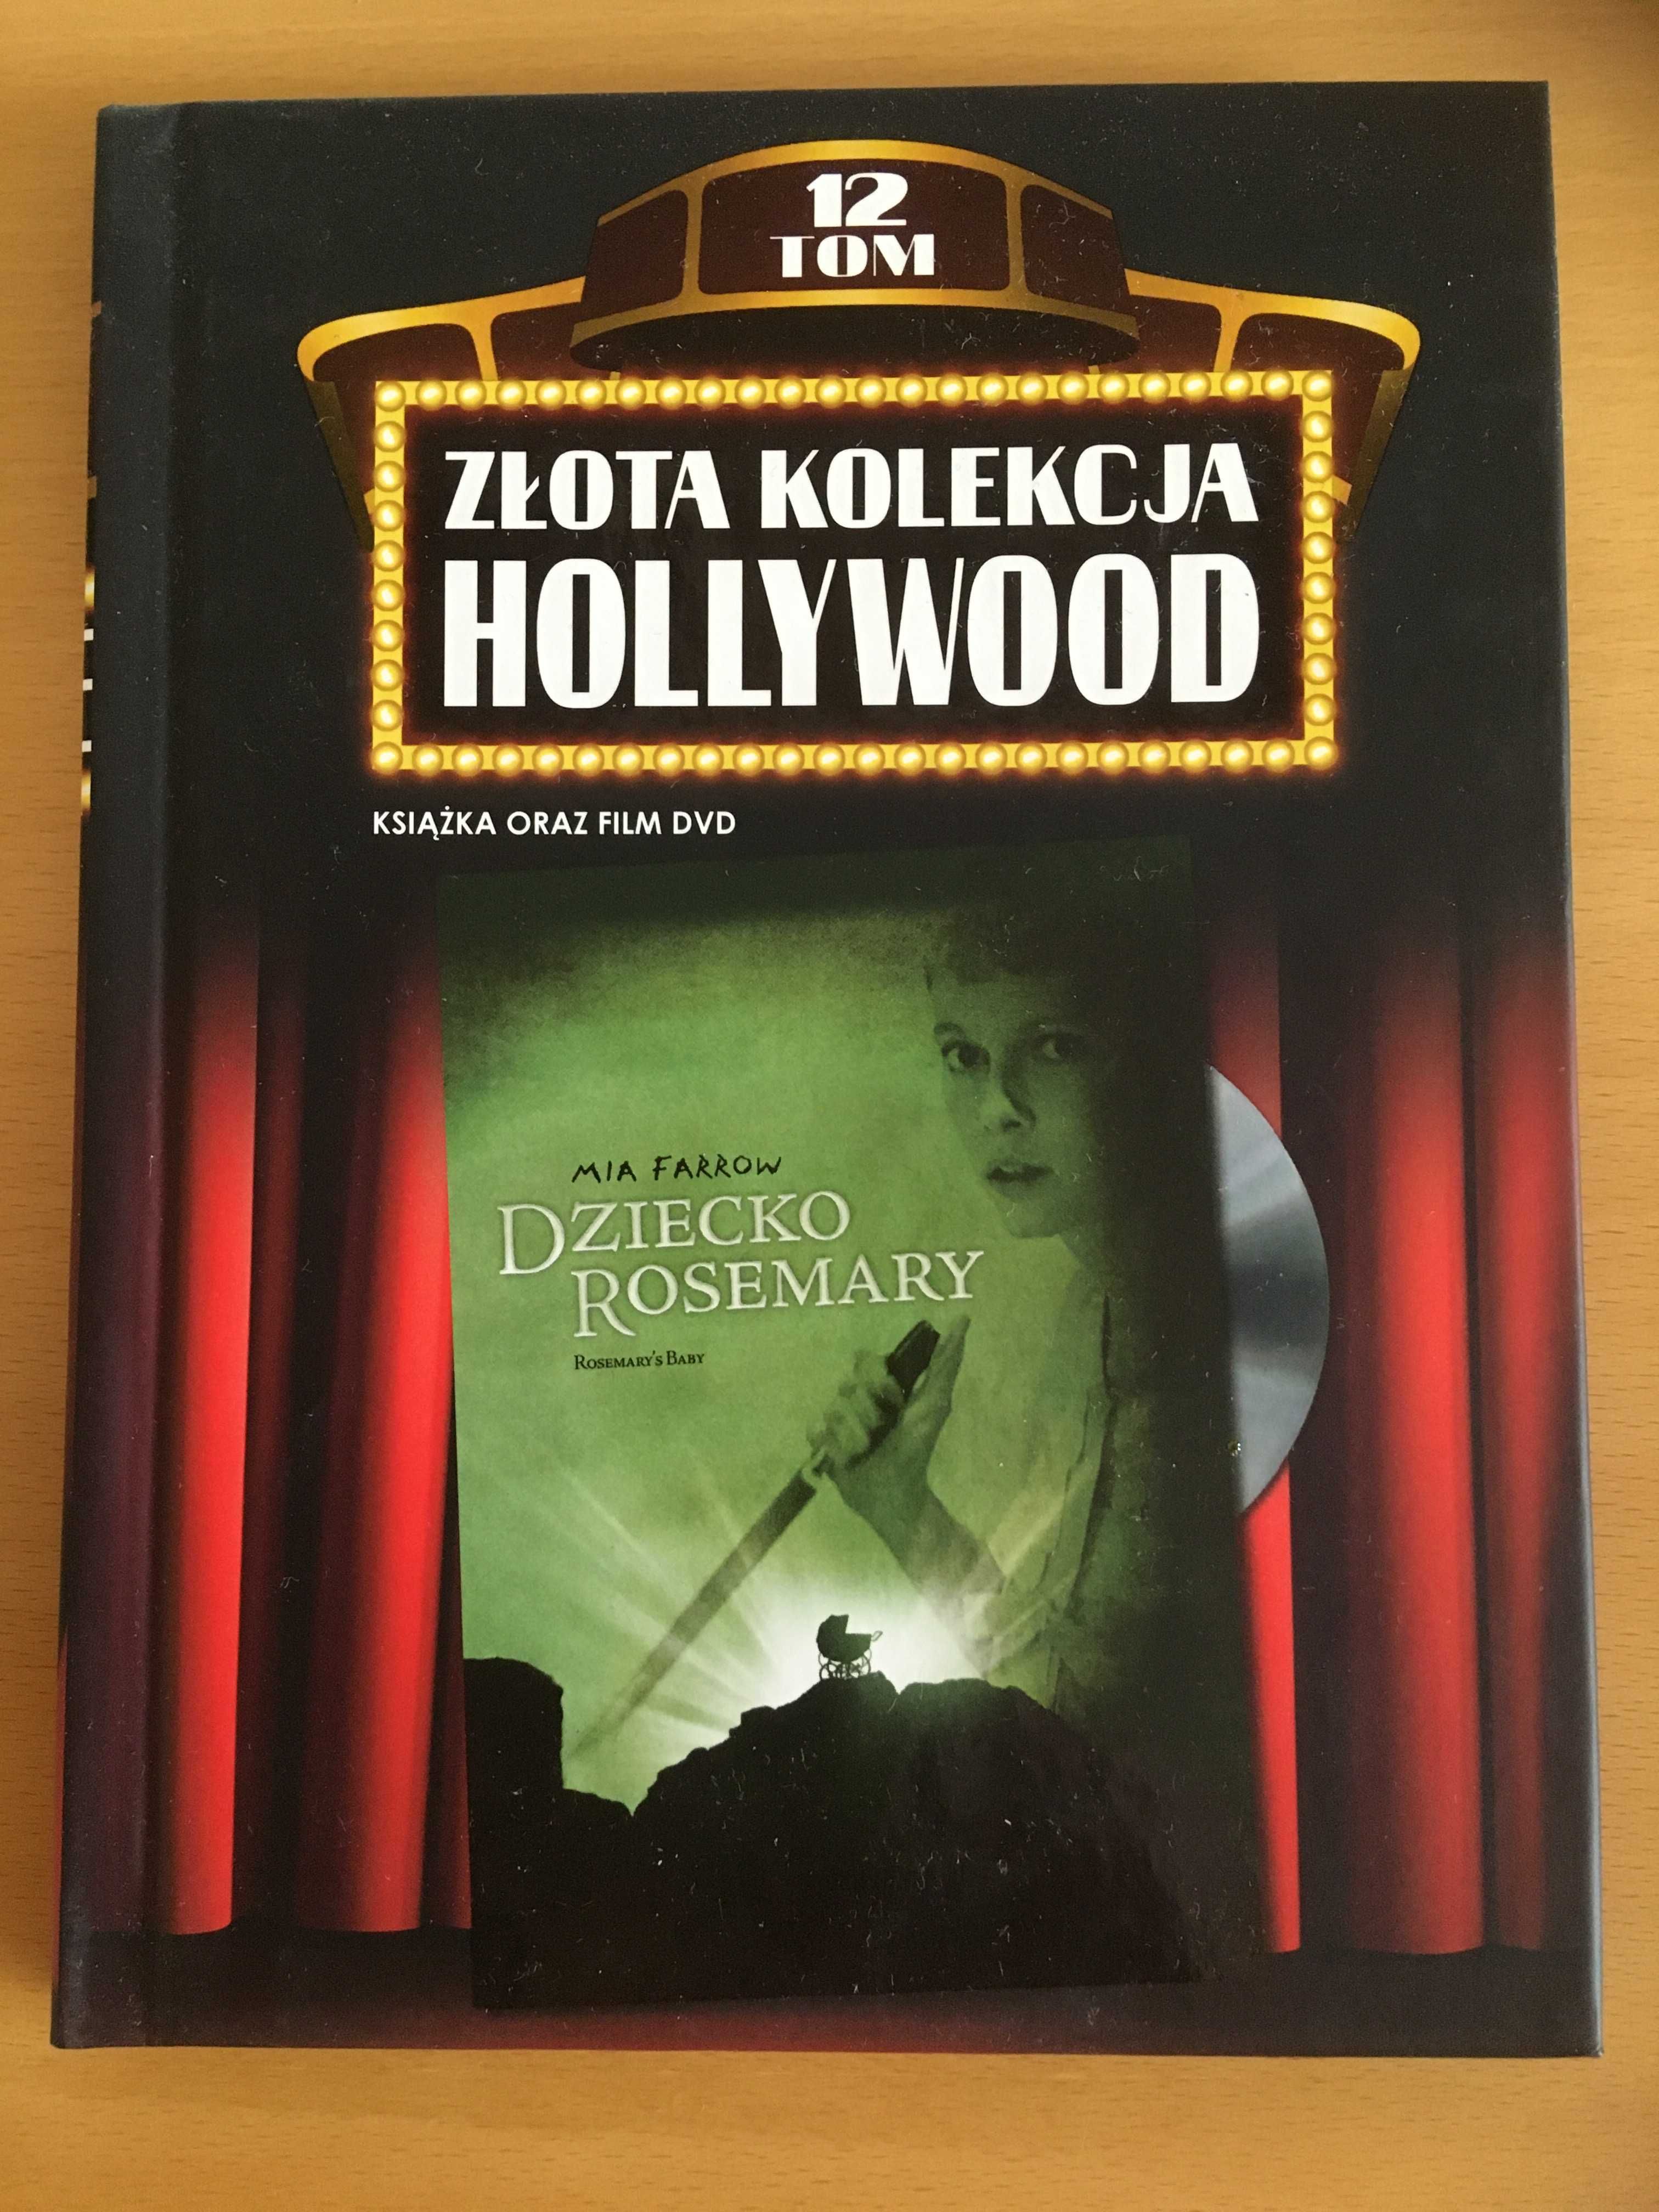 Dziecko Rosemary - Złota kolekcja Hollywood DVD